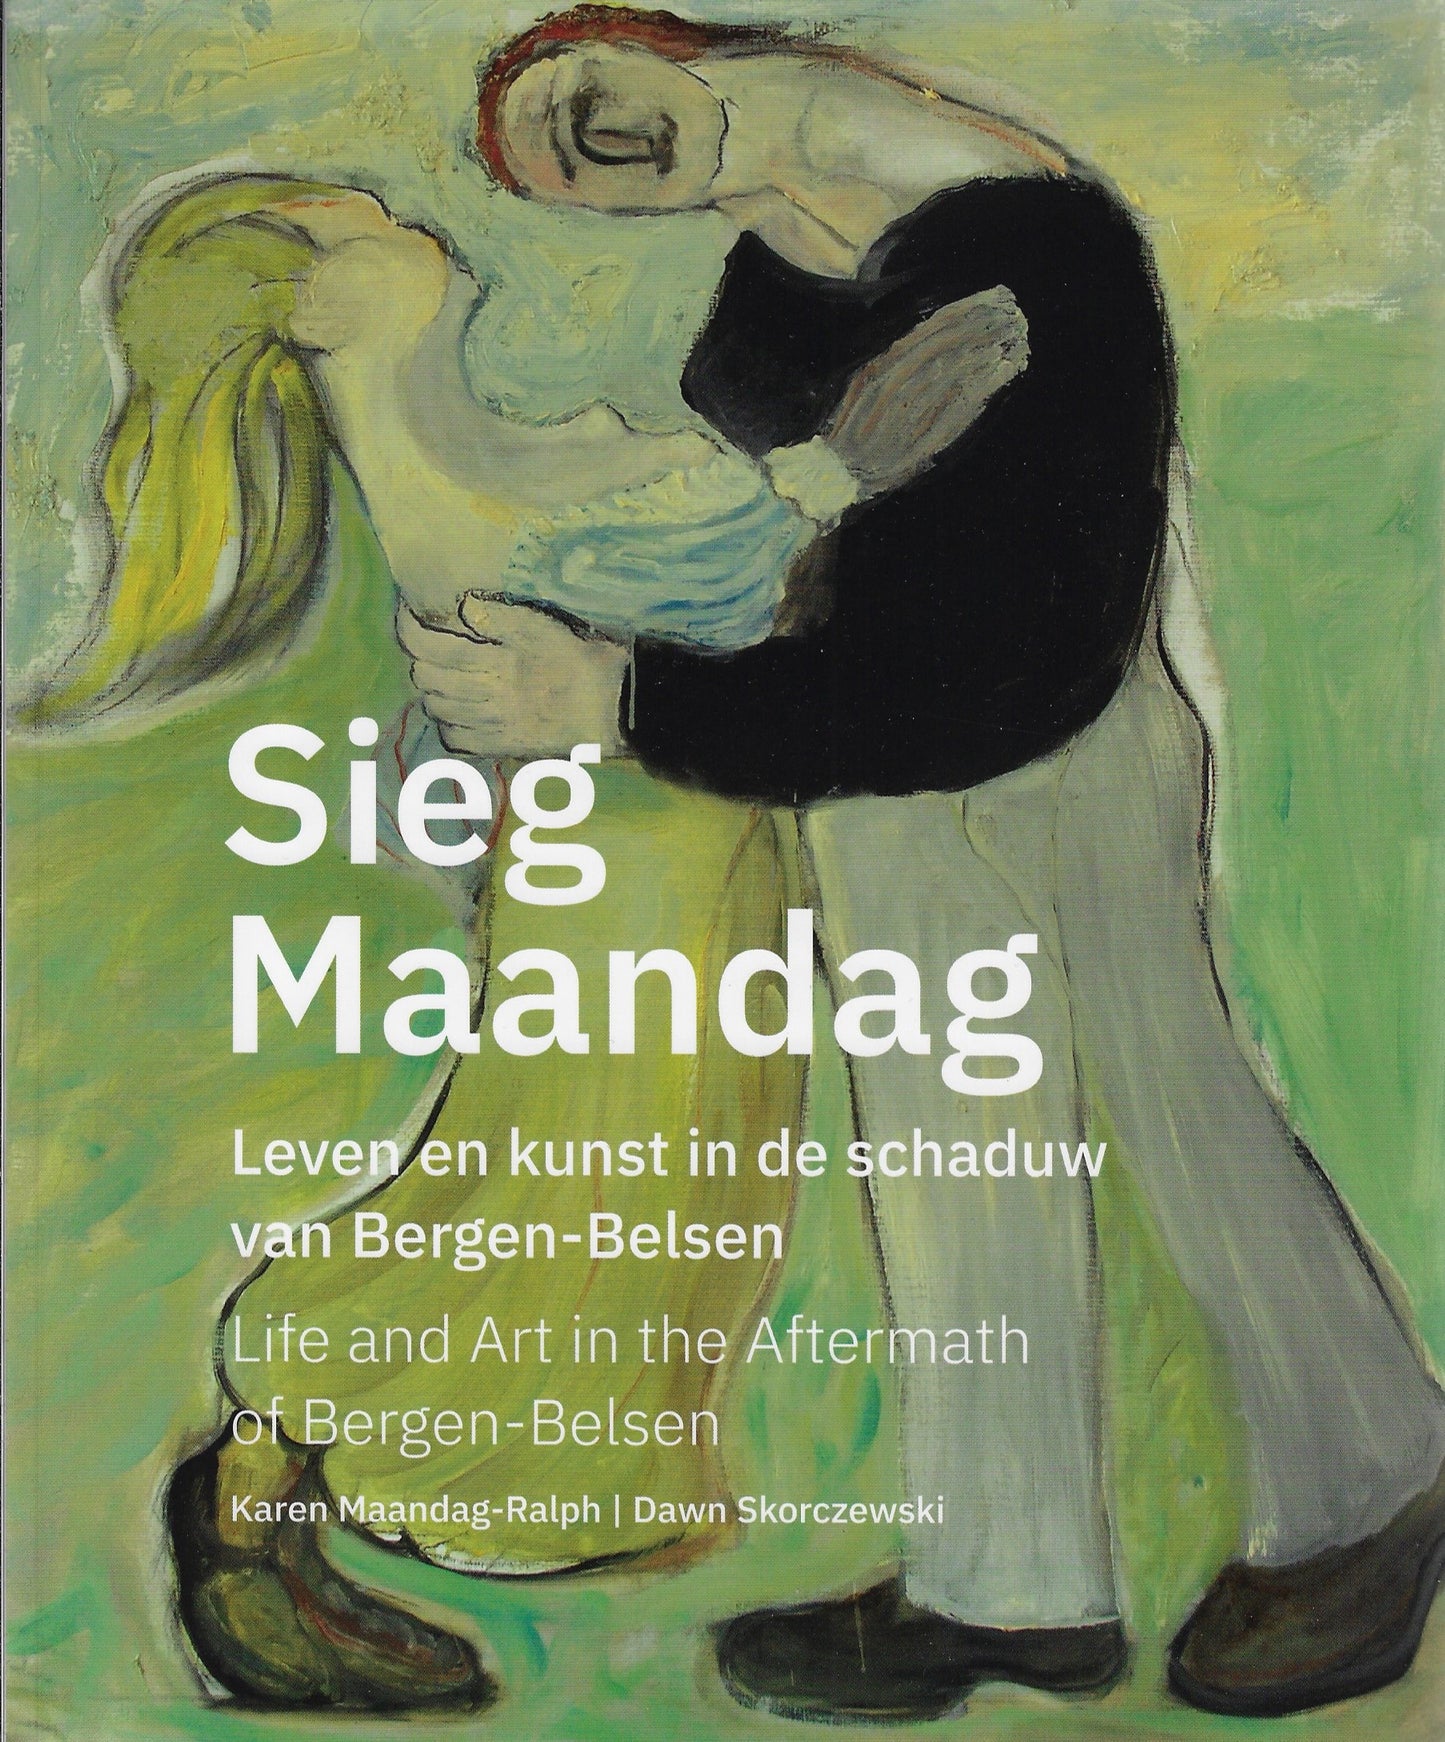 Sieg Maandag, leven en kunst in de schaduw van Bergen-Belsen